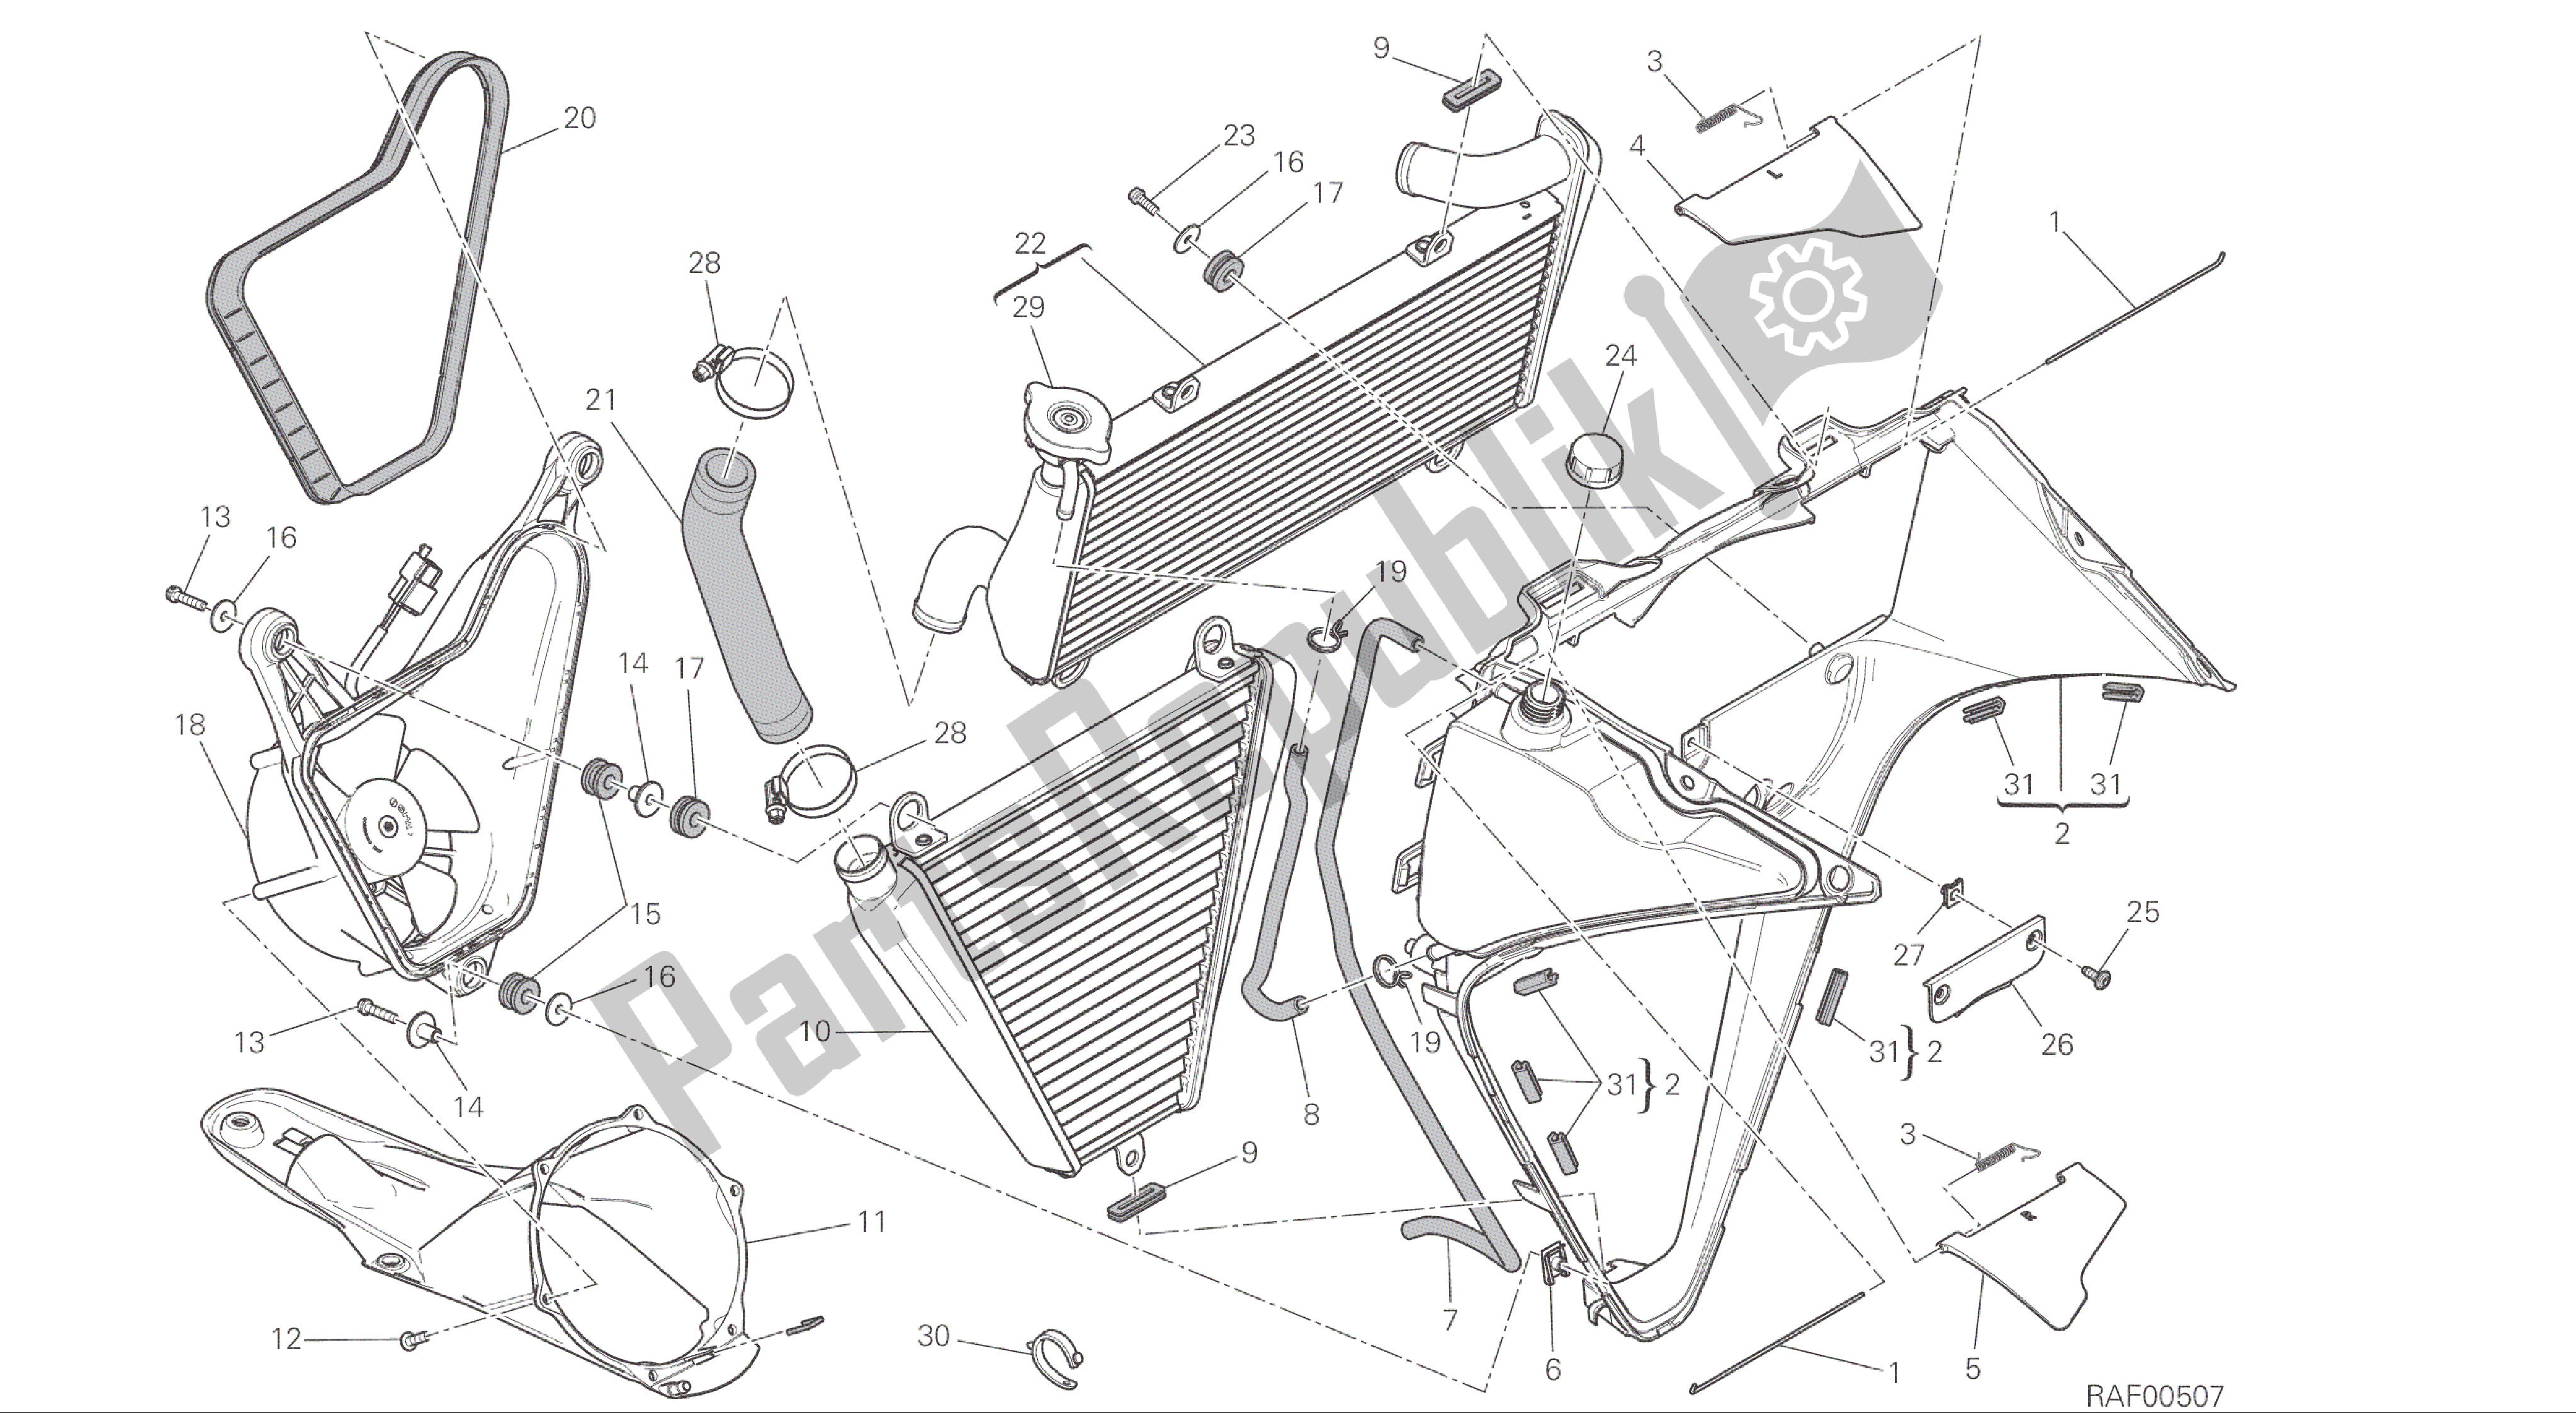 Alle onderdelen voor de Tekening 030 - Waterkoeler [mod: 1299; Xst: Aus, Eur, Fra, Jap, Twn] Groepsframe van de Ducati Panigale ABS 1299 2016